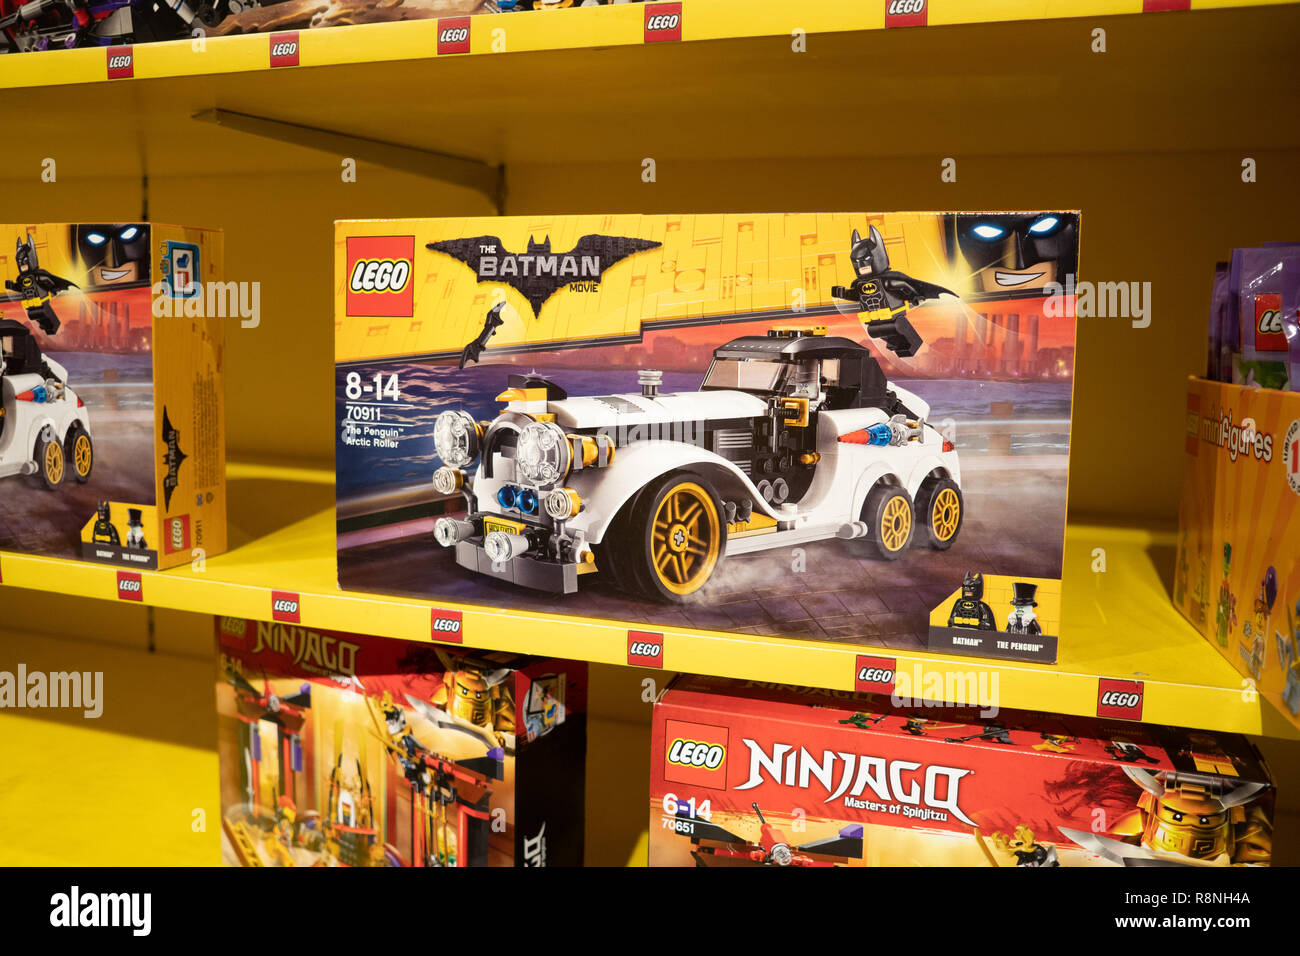 Lego Batman Theme,Pinguino rullo artico veicolo in vendita entro un Toys R Us store, Cebu, Filippine Foto Stock